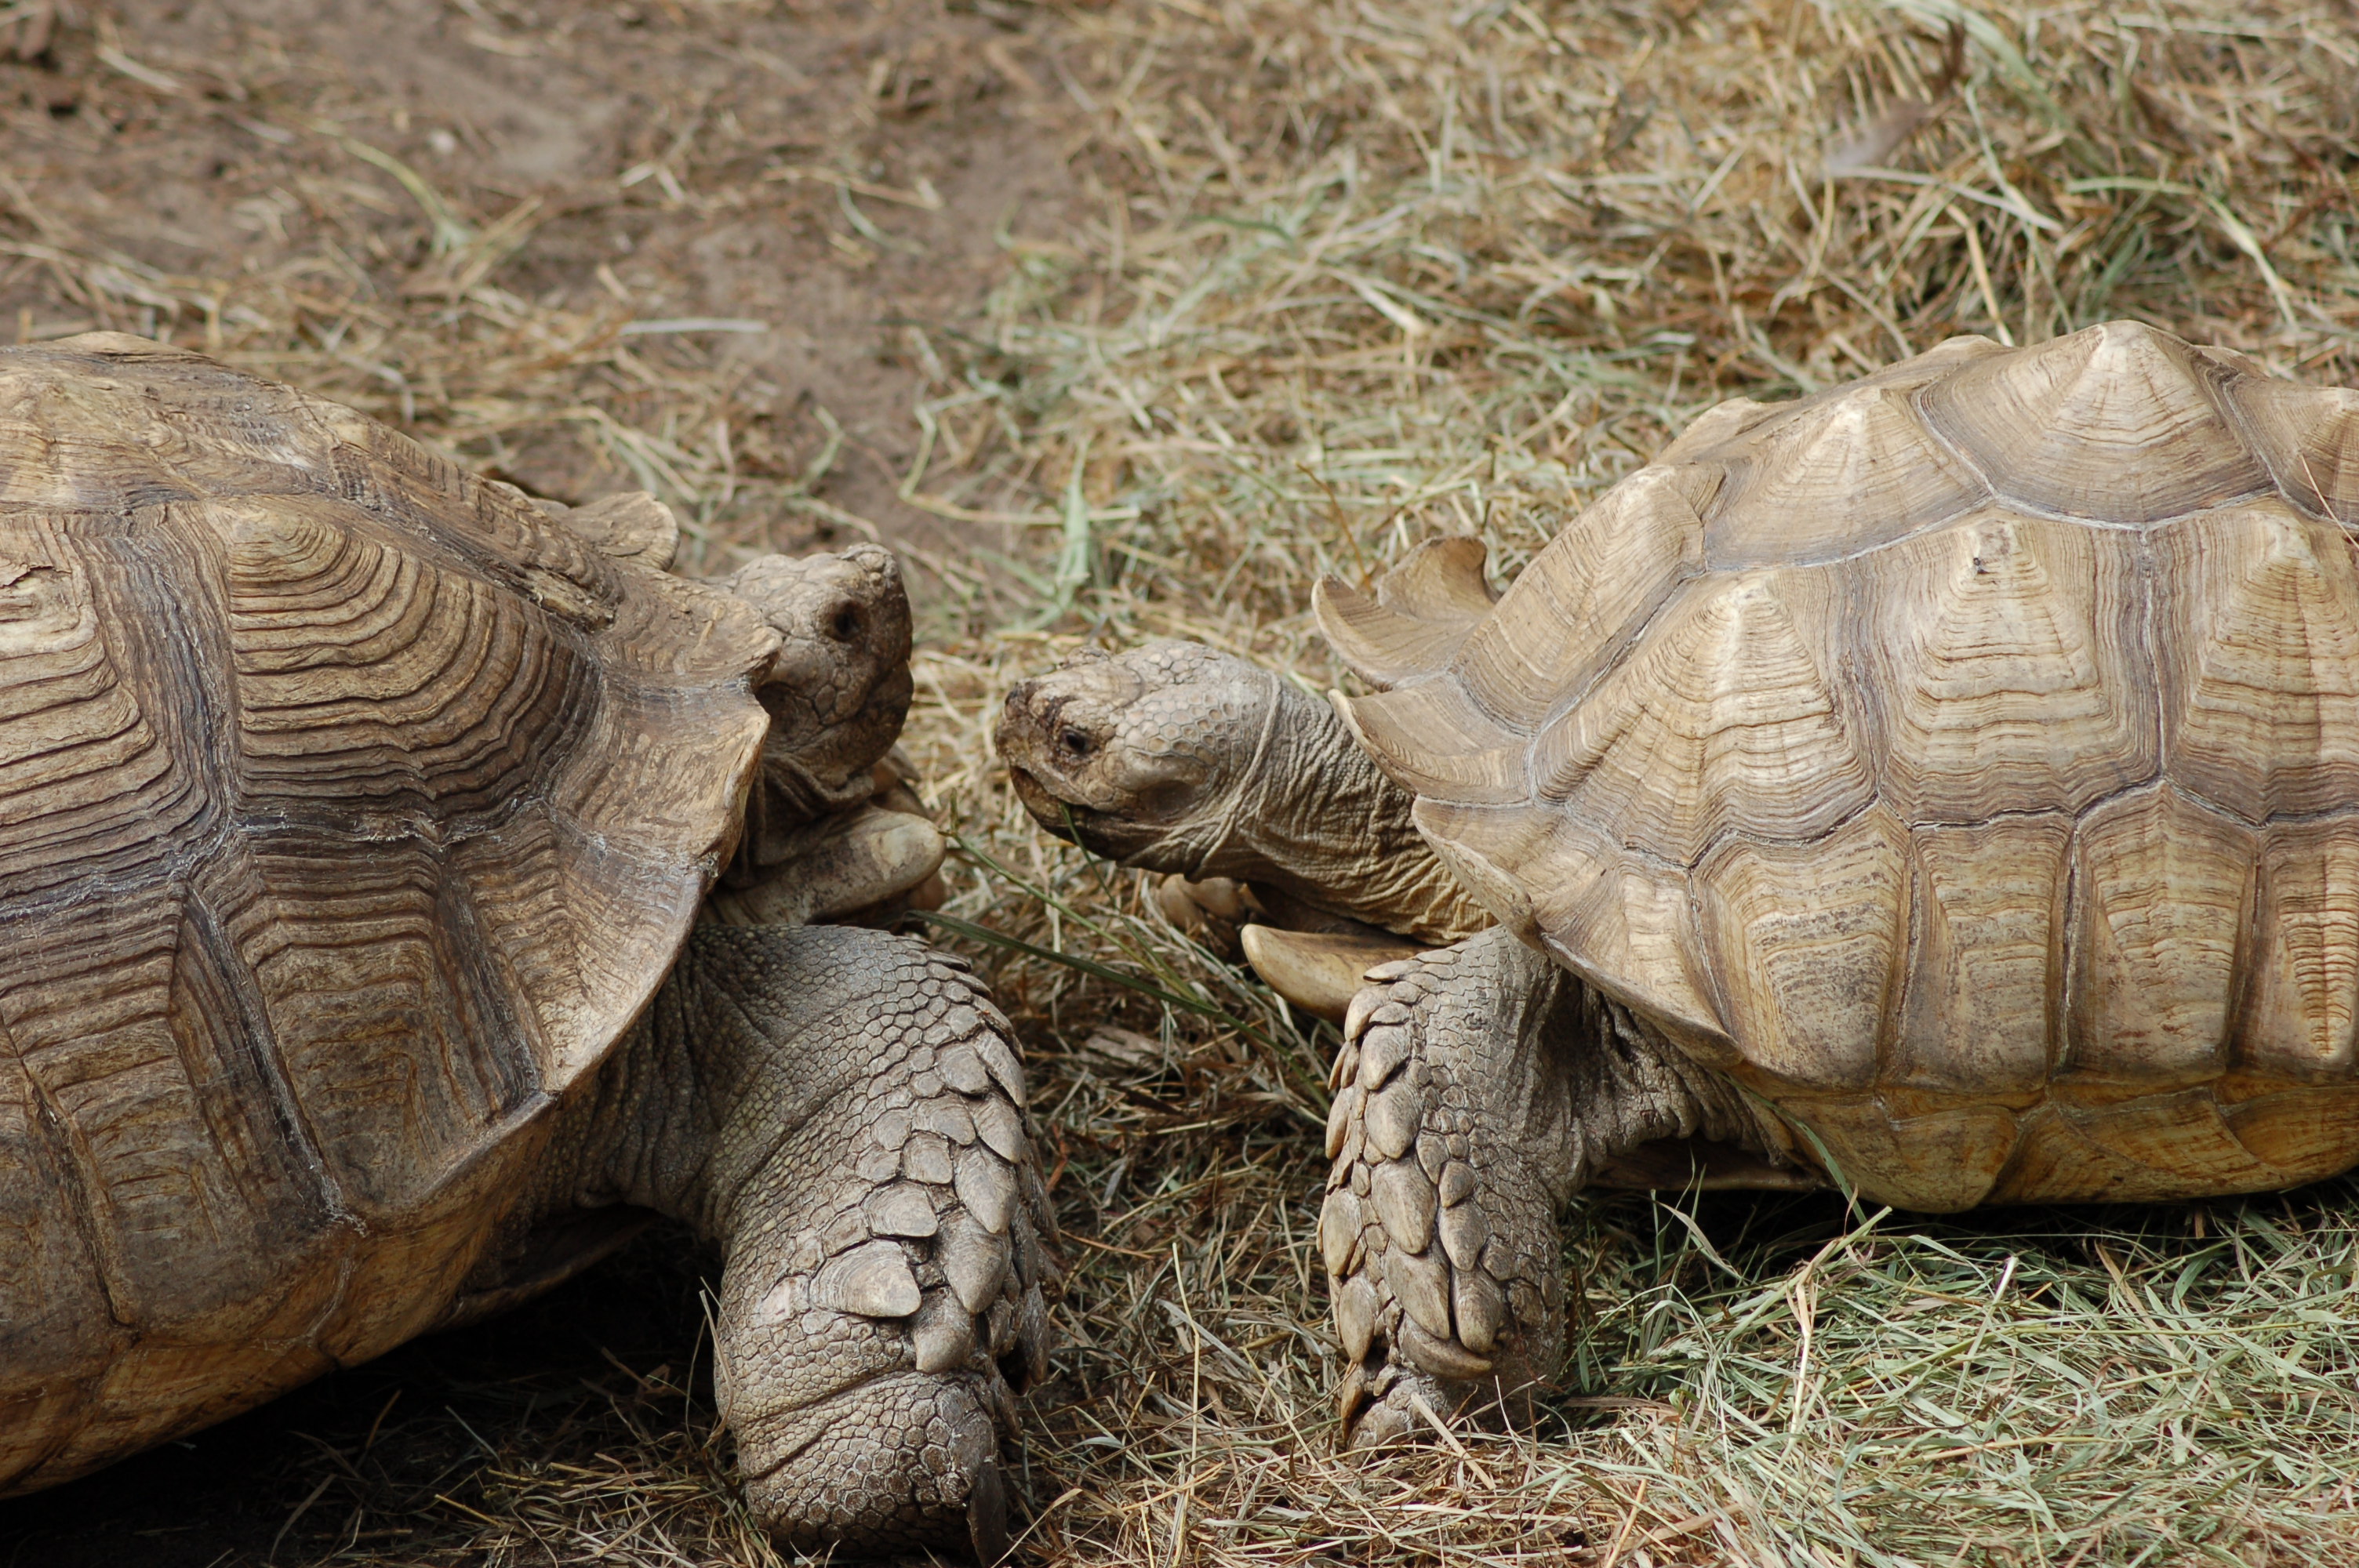 GarLyn Zoo 2 Tortoises